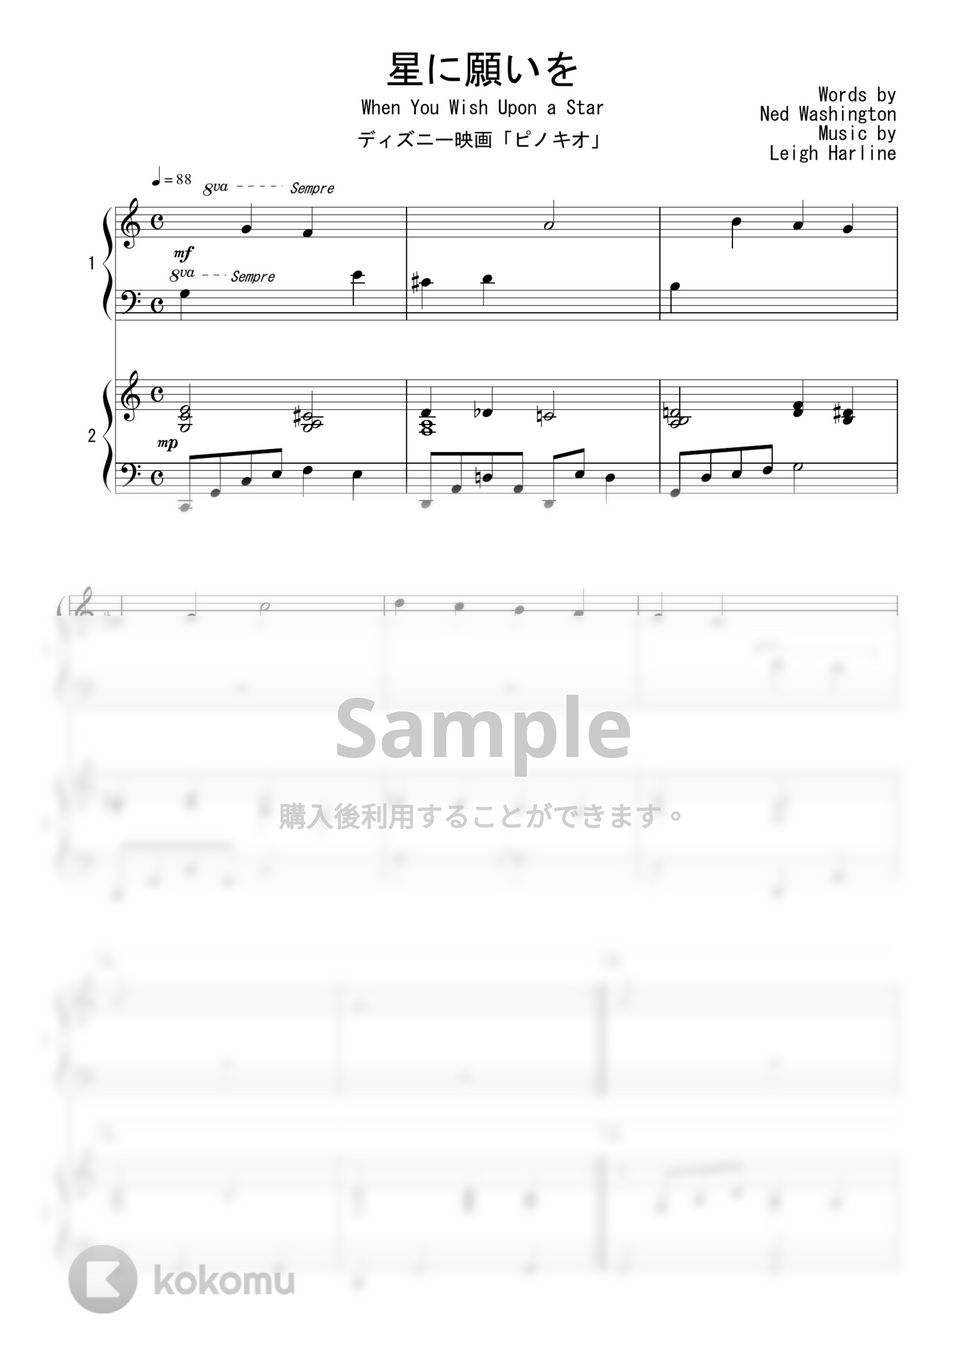 ディズニー映画『ピノキオ』OST - 星に願いを (連弾) by Peony